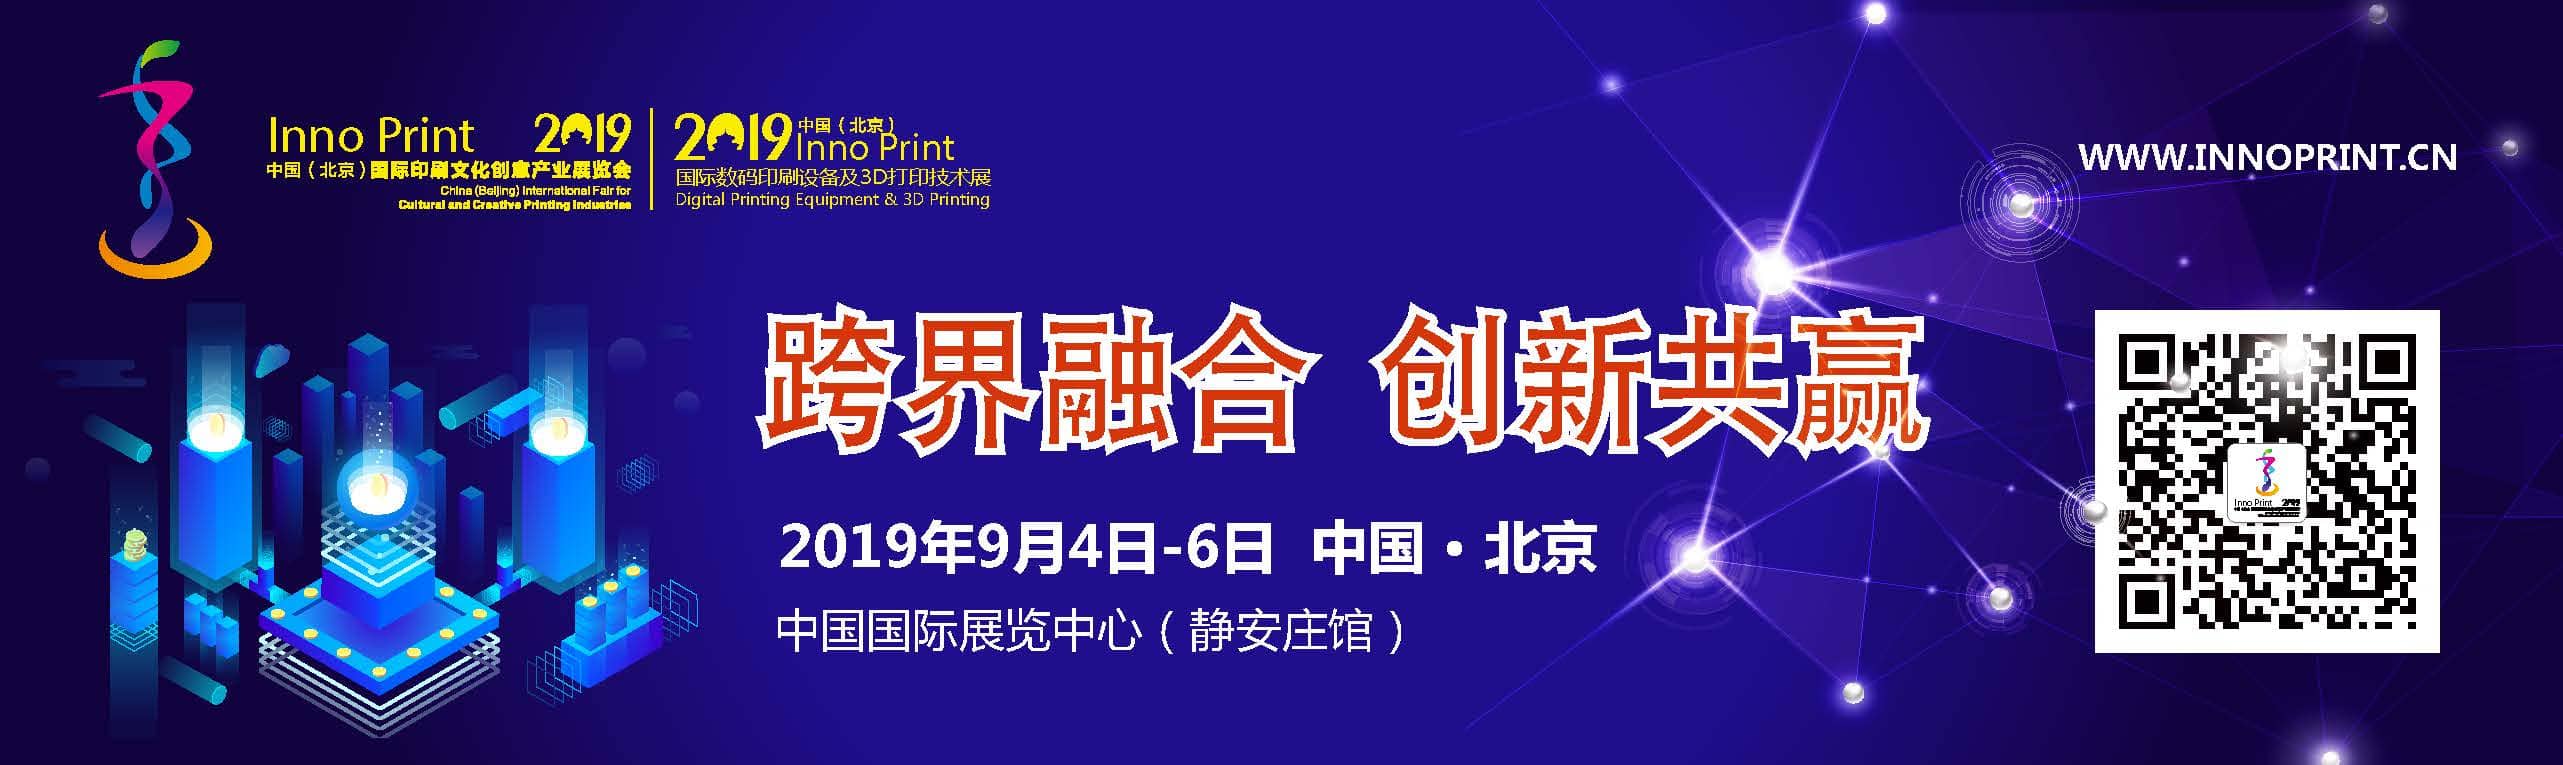 2019中国国际印刷文化创意产业展览会暨数码印刷设备及3D打印技术展信息验证